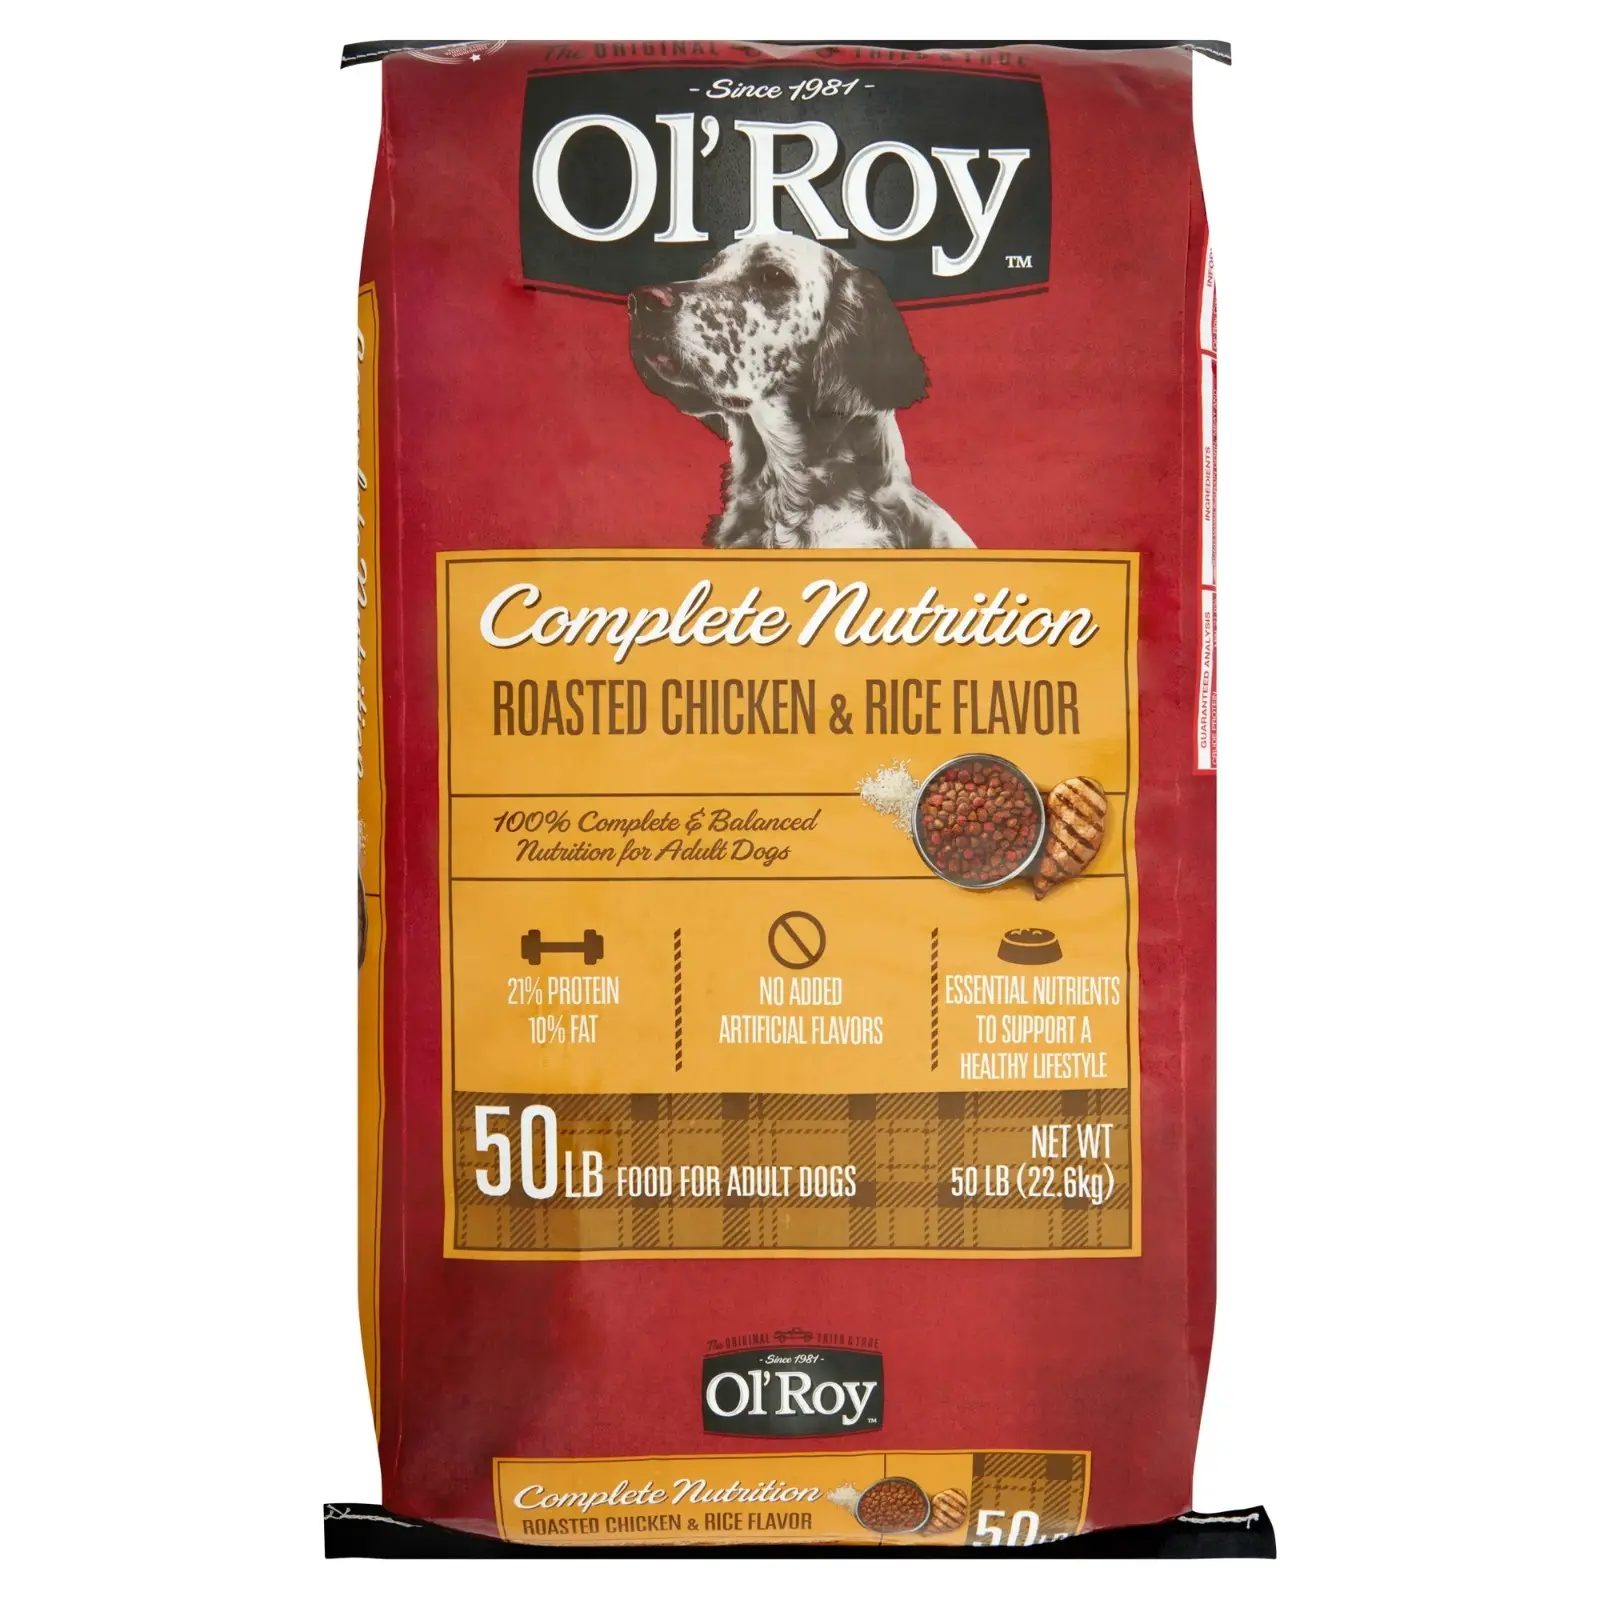 Ol'Roy Complete Nutritionローストチキン & ライスフレーバードライドッグフード、50ポンド